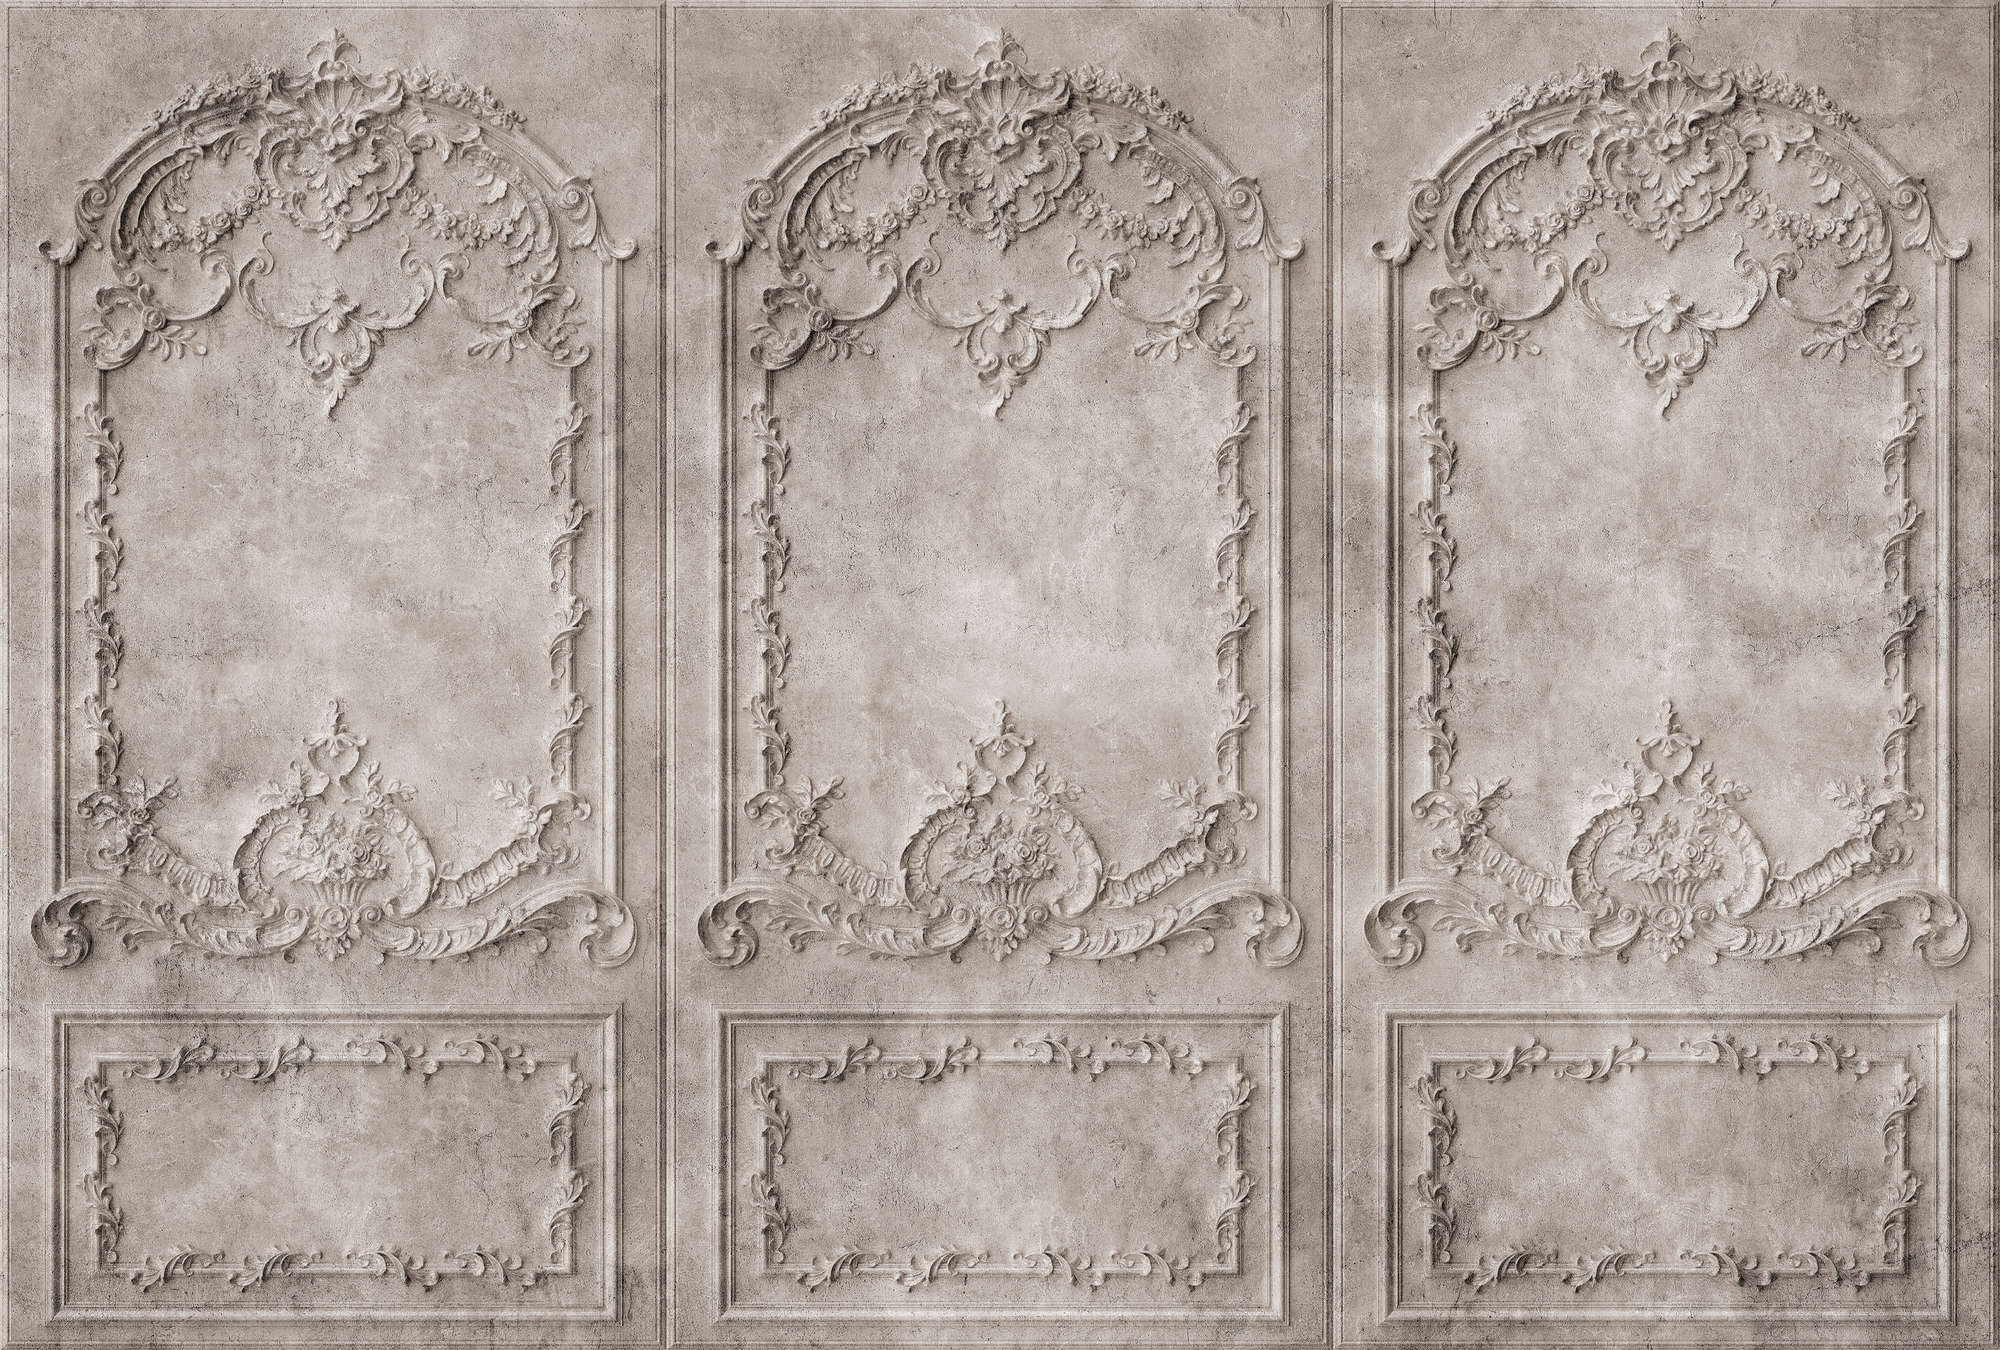             Versailles 1 - Barok stijl grijs-bruine houten panelen behang
        